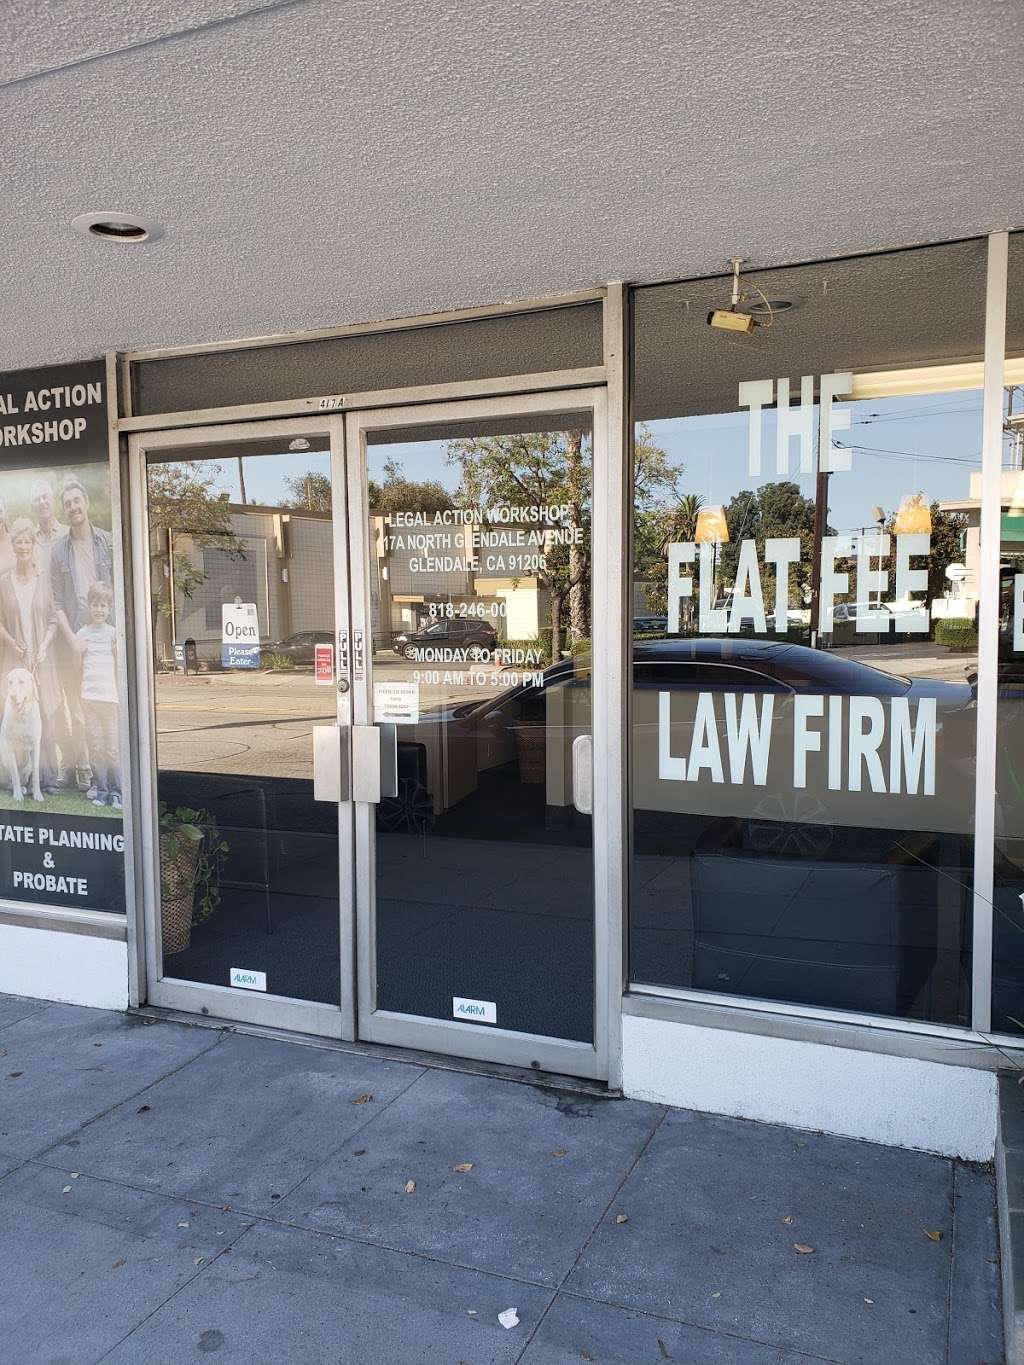 Legal Action Workshop | 417 N Glendale Ave, Glendale, CA 91206 | Phone: (818) 246-0073